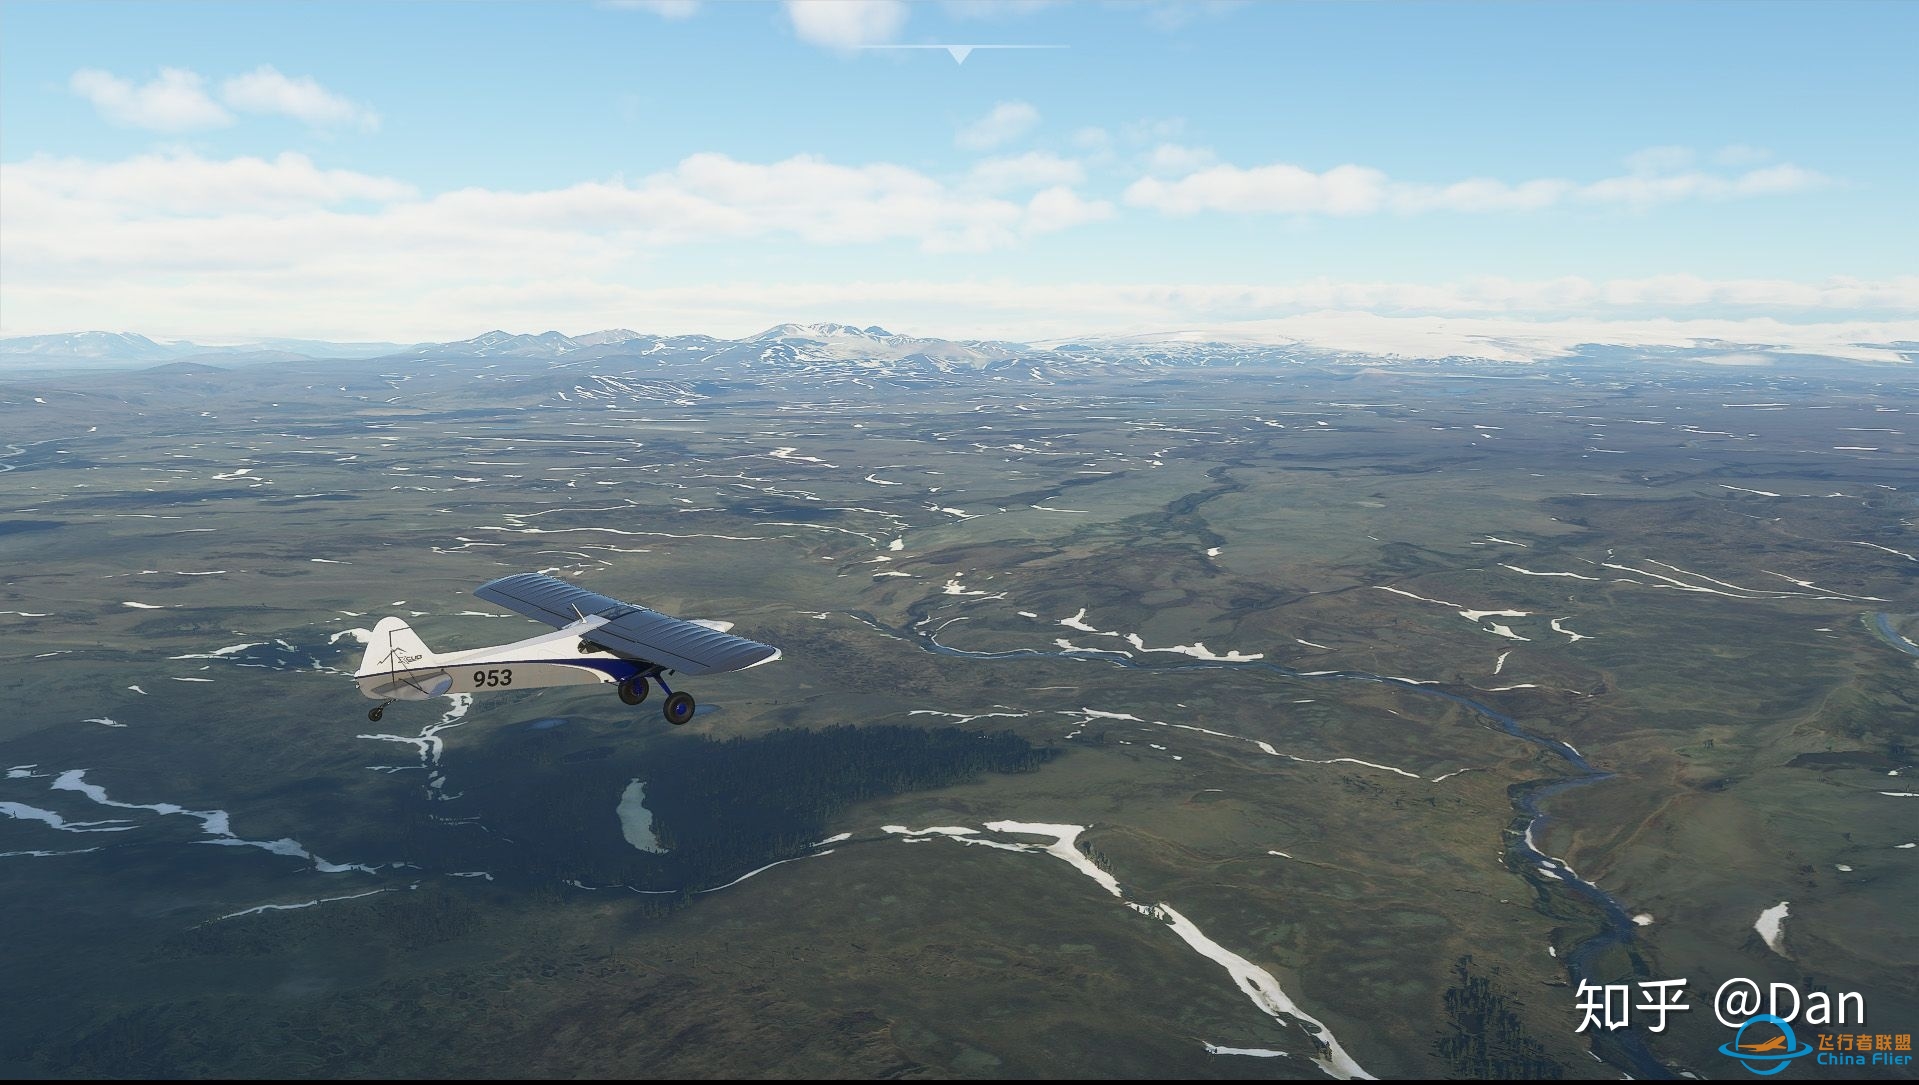 飞行模拟游戏《微软飞行模拟2020》实际体验如何？-9187 